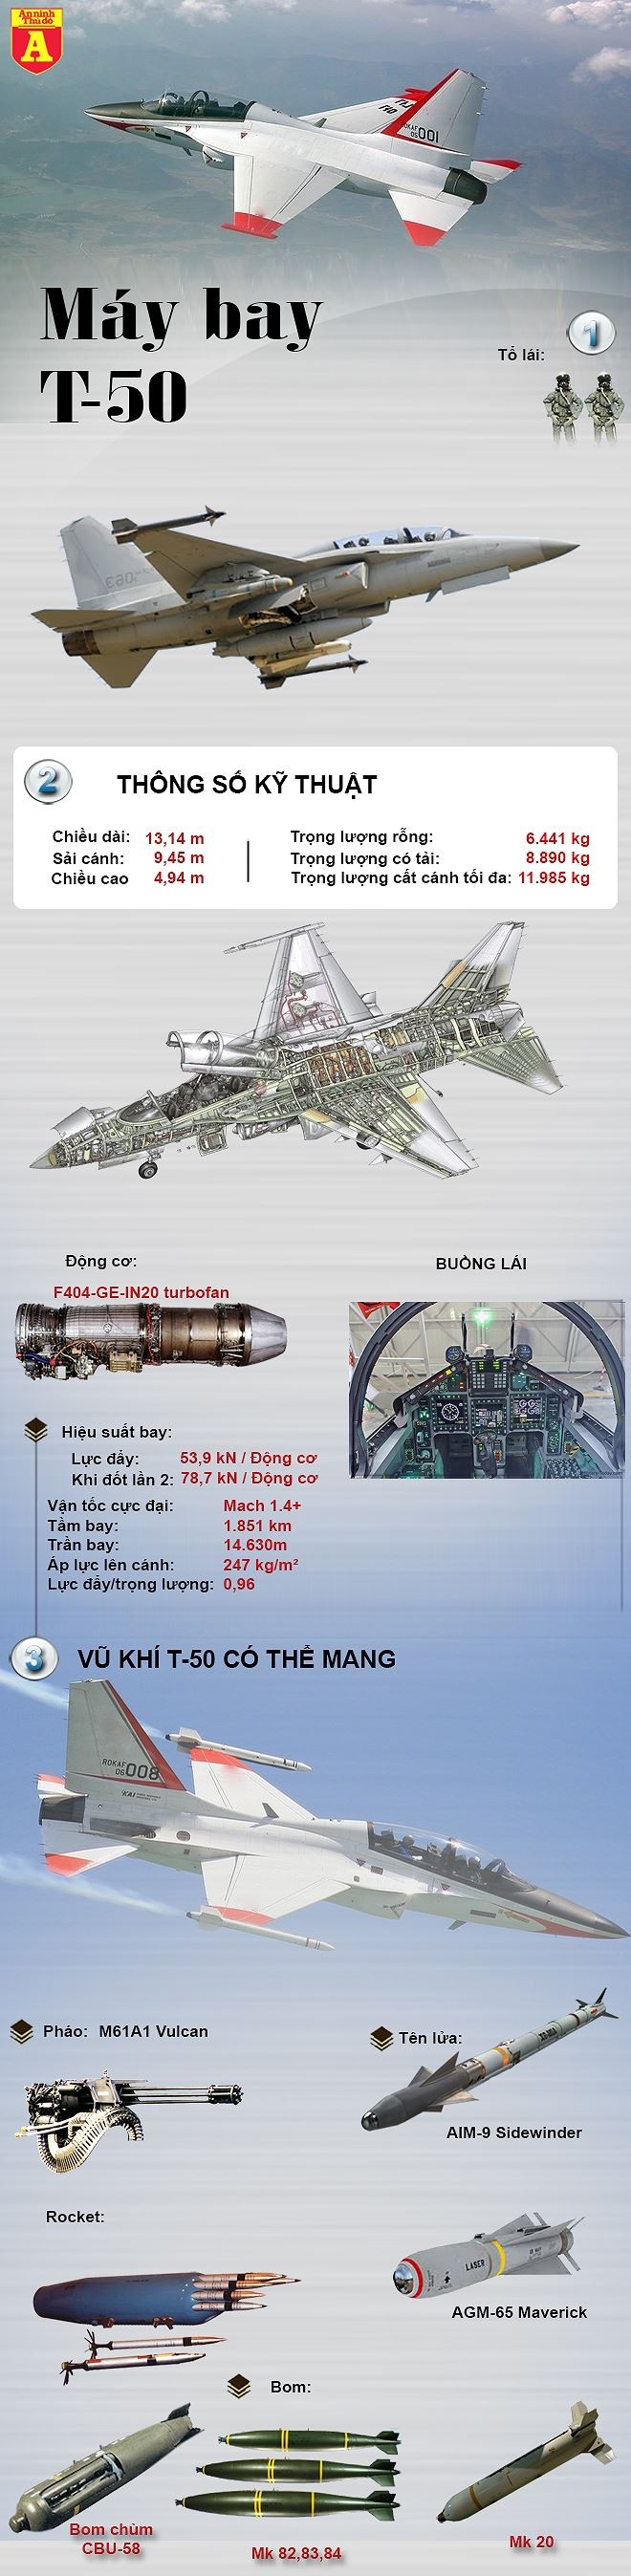 [ĐỒ HỌA] Mỹ mua máy bay T-50 Hàn Quốc sau khi máy bay huấn luyện cho phi công F-22 liên tục bị rơi ảnh 2